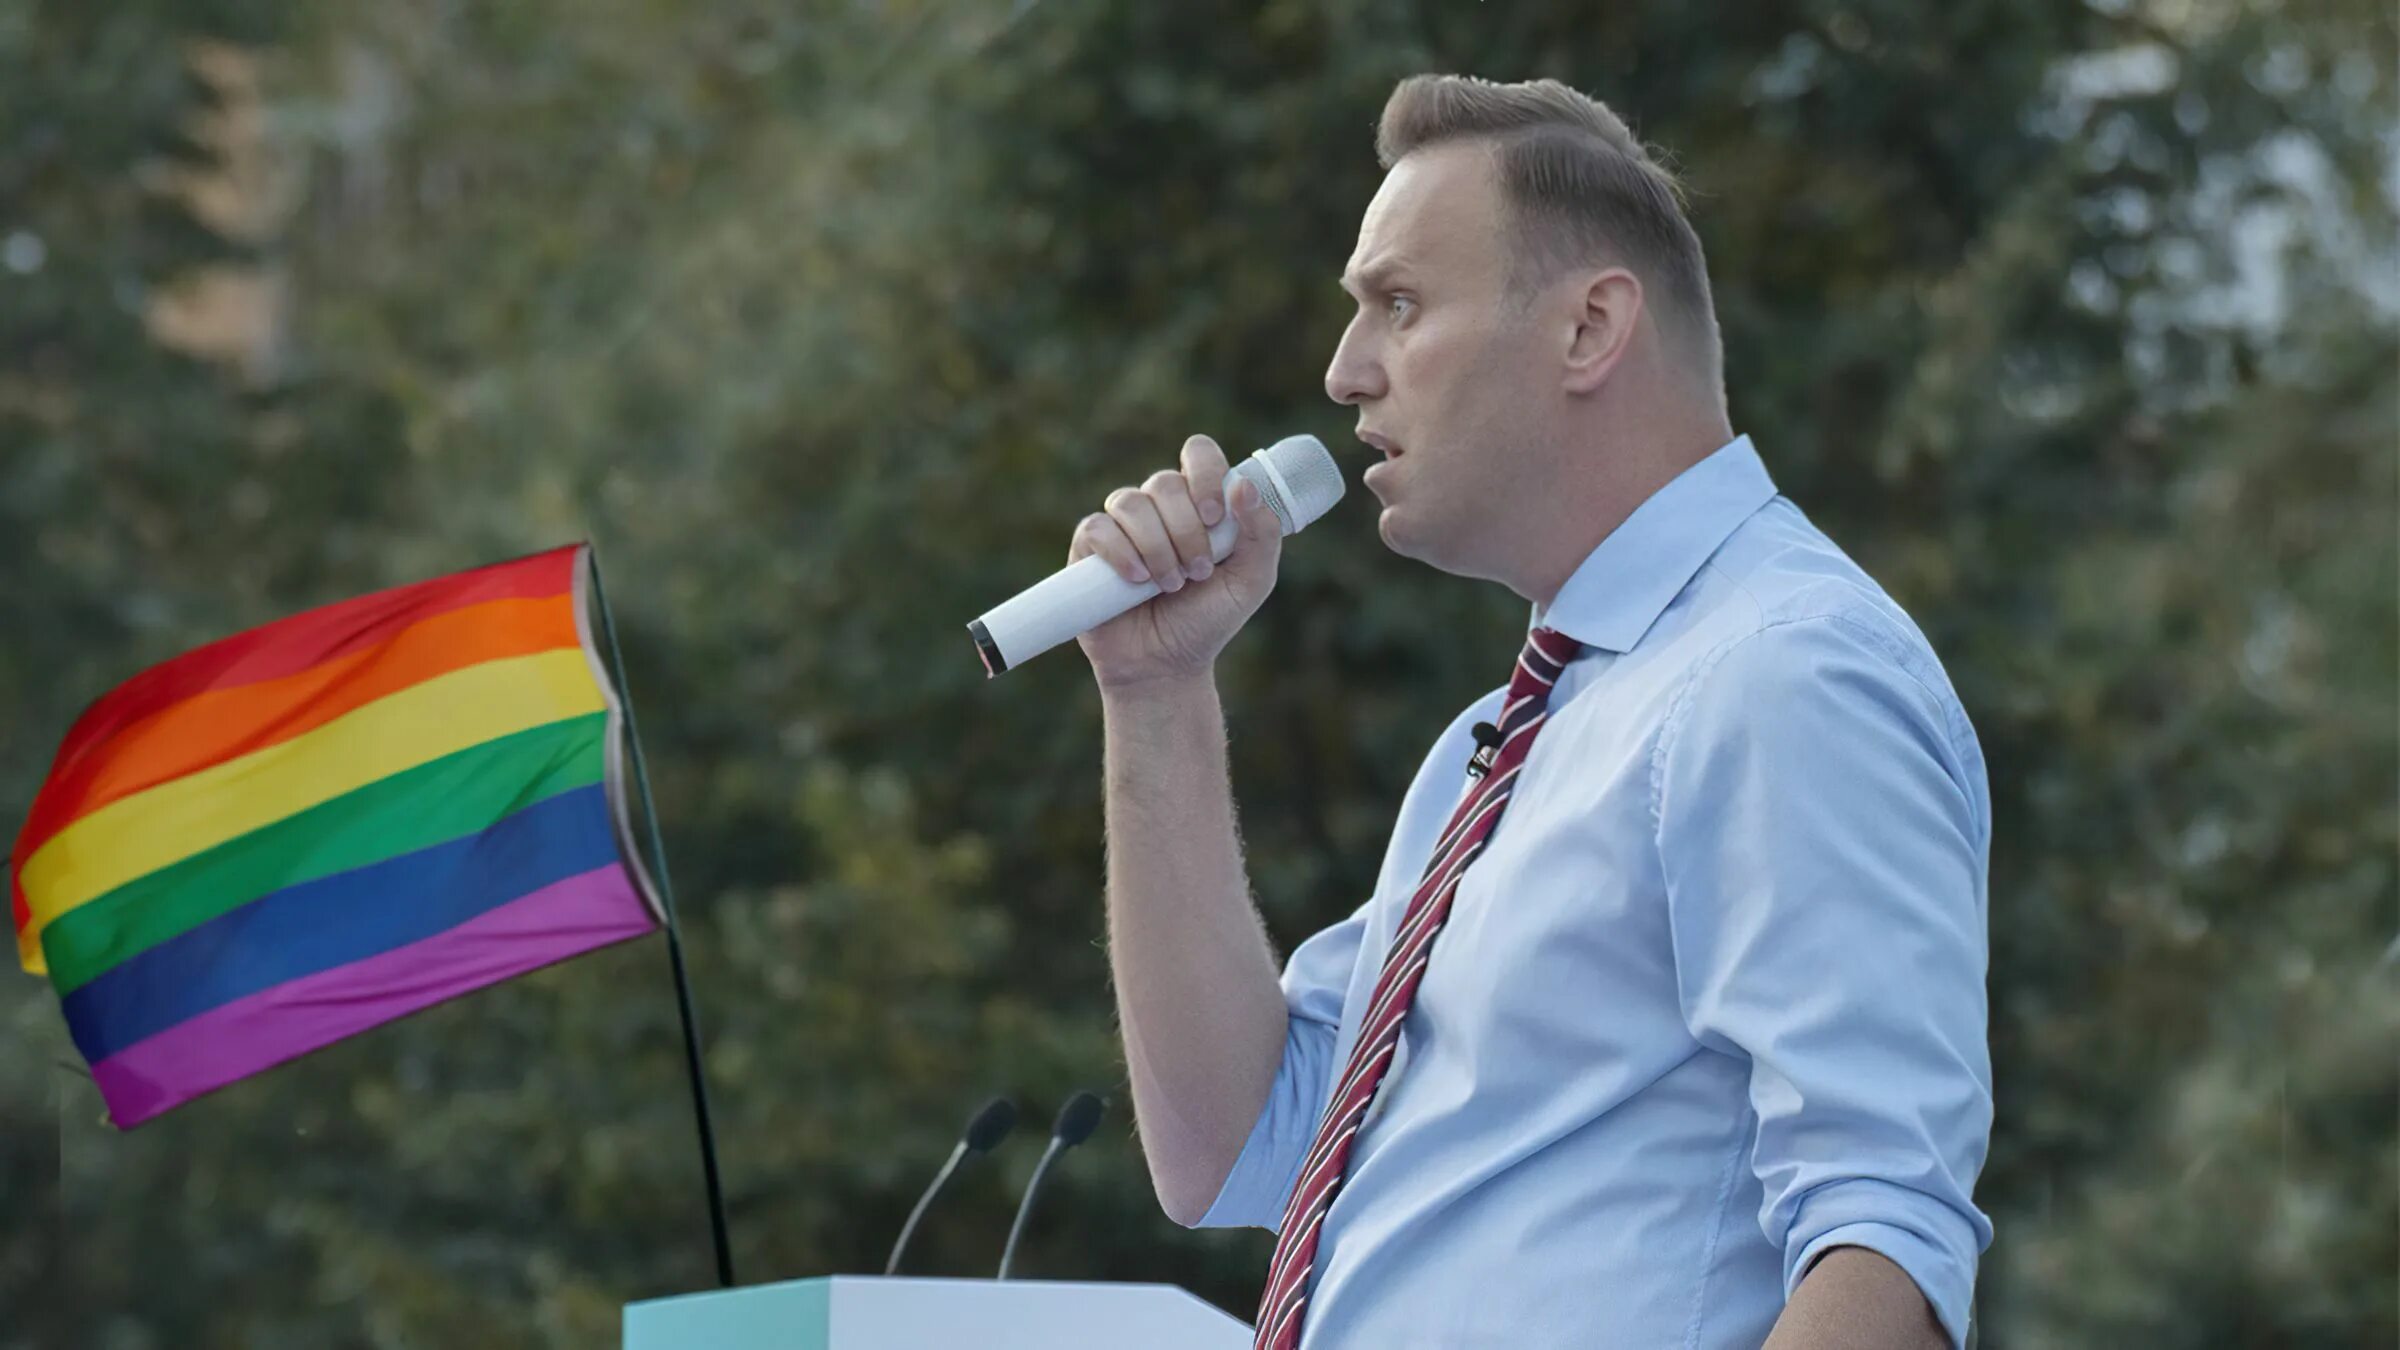 Затылок Навального. Навальный скошенный затылок. Навальный плоский затылок. Общение с душой навального